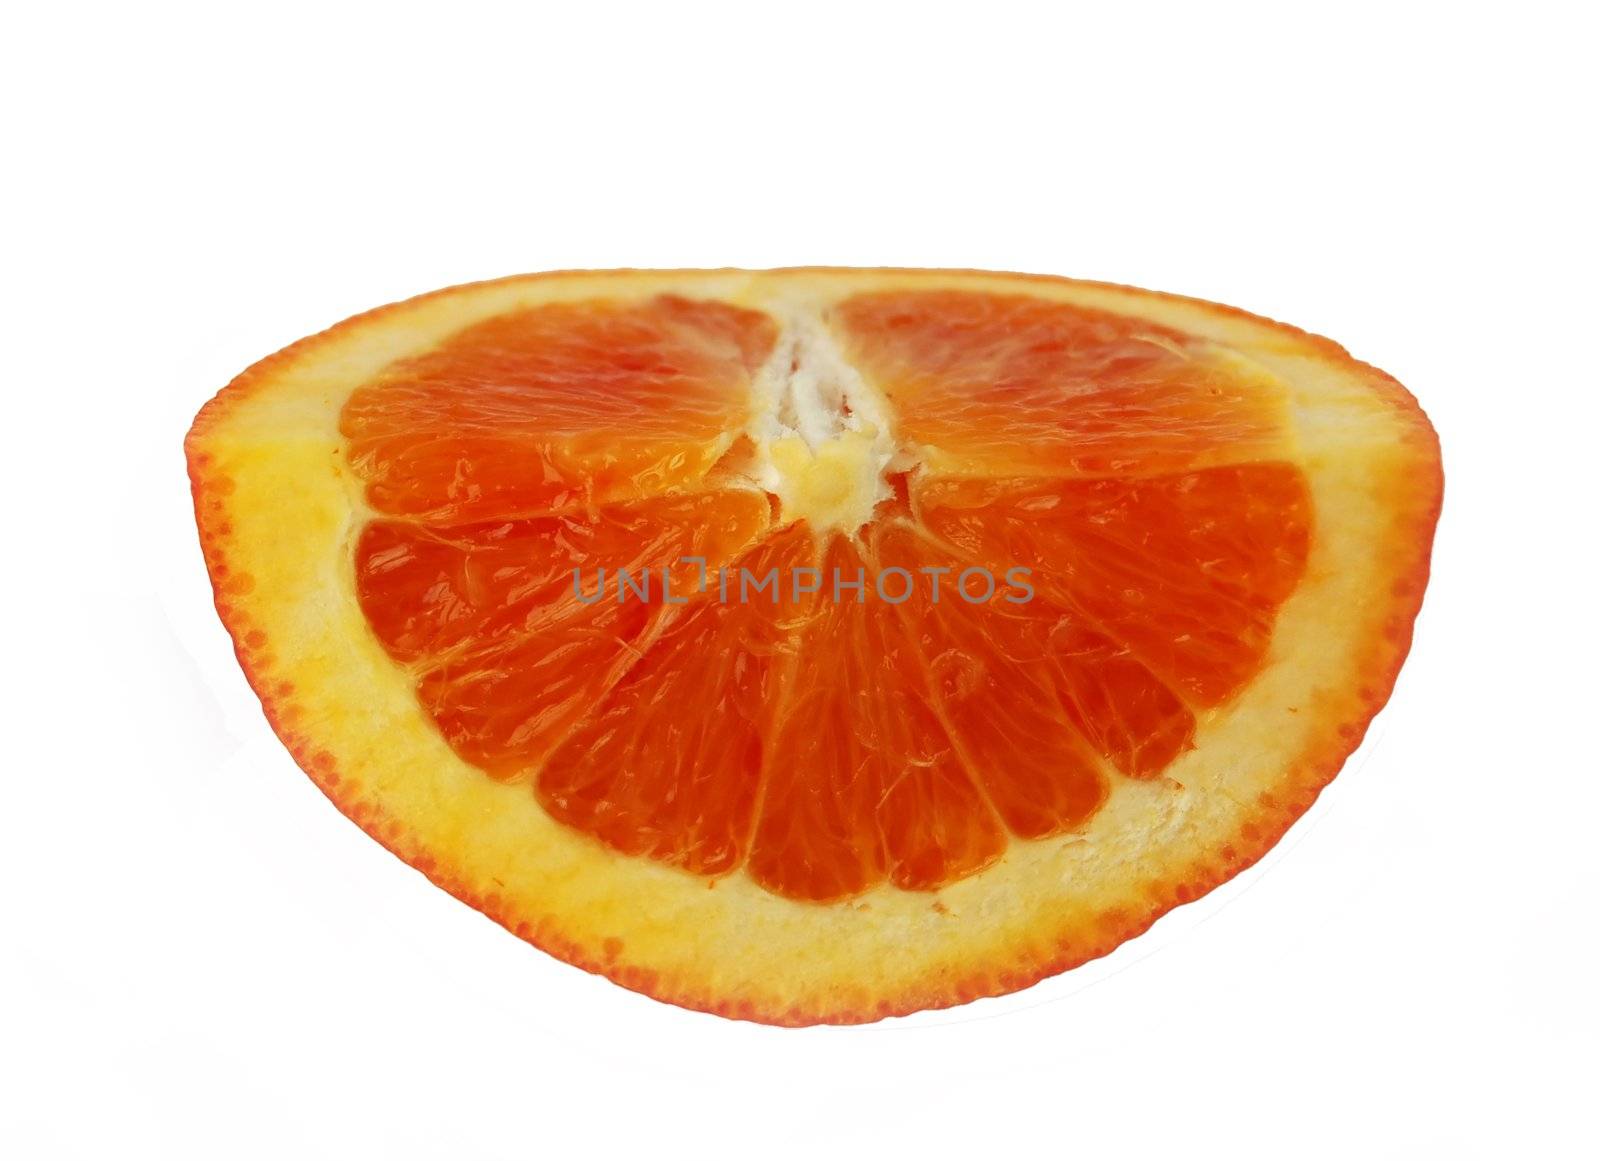 quarter of orange by mettus